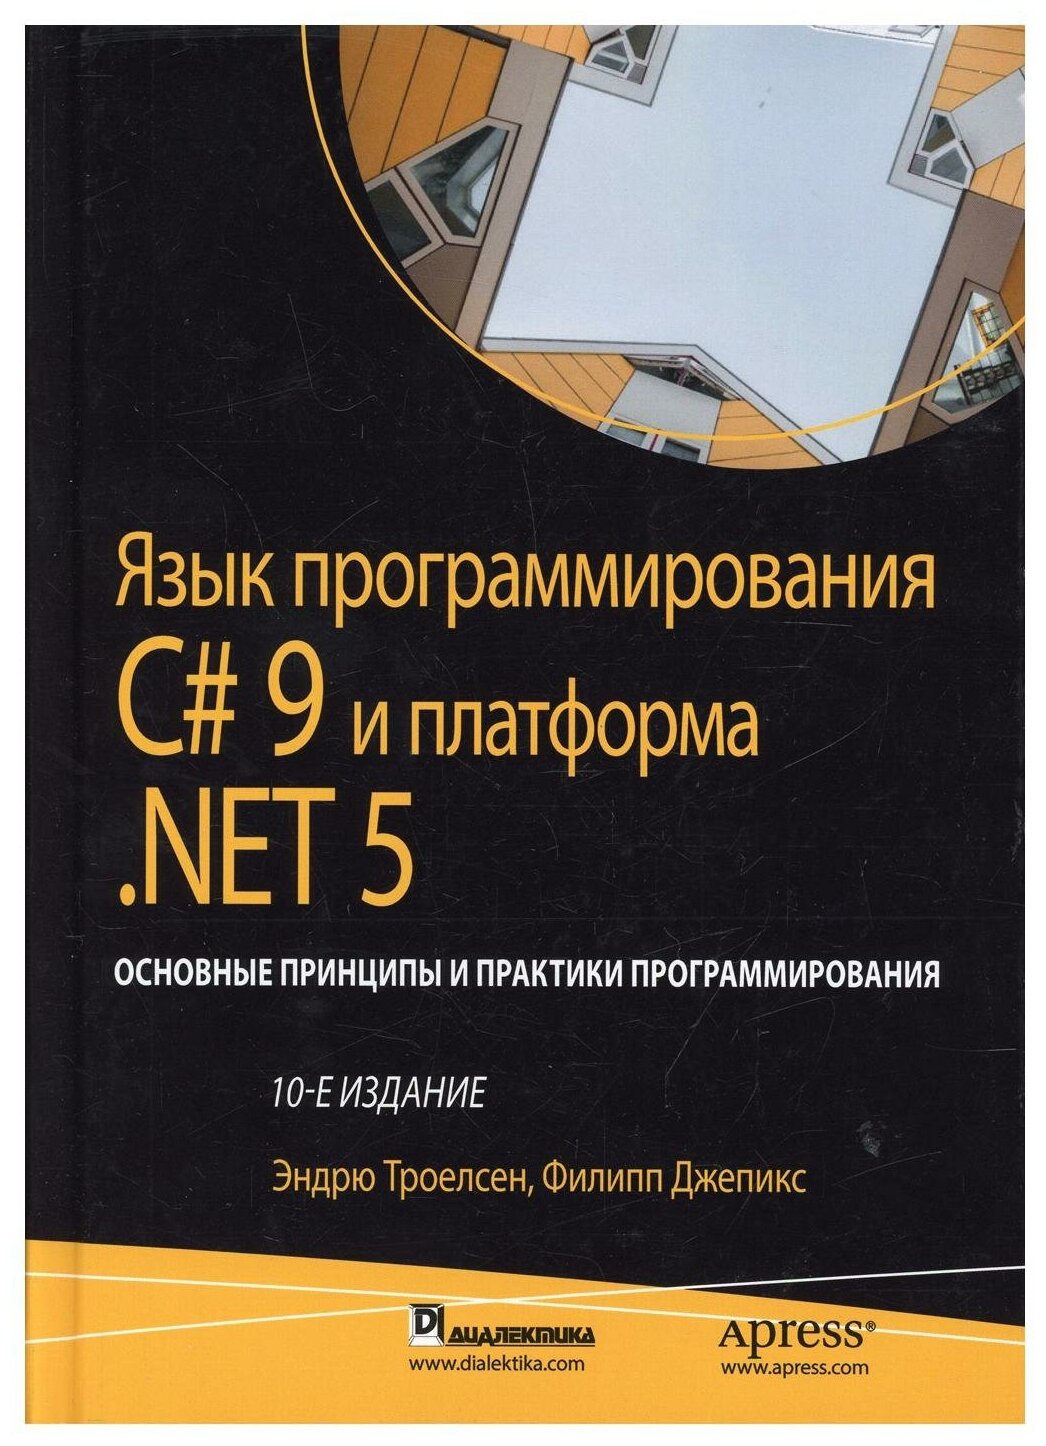 Язык программирования C# 9 и платформа .NET 5: основные принципы и практики программирования - фото №1